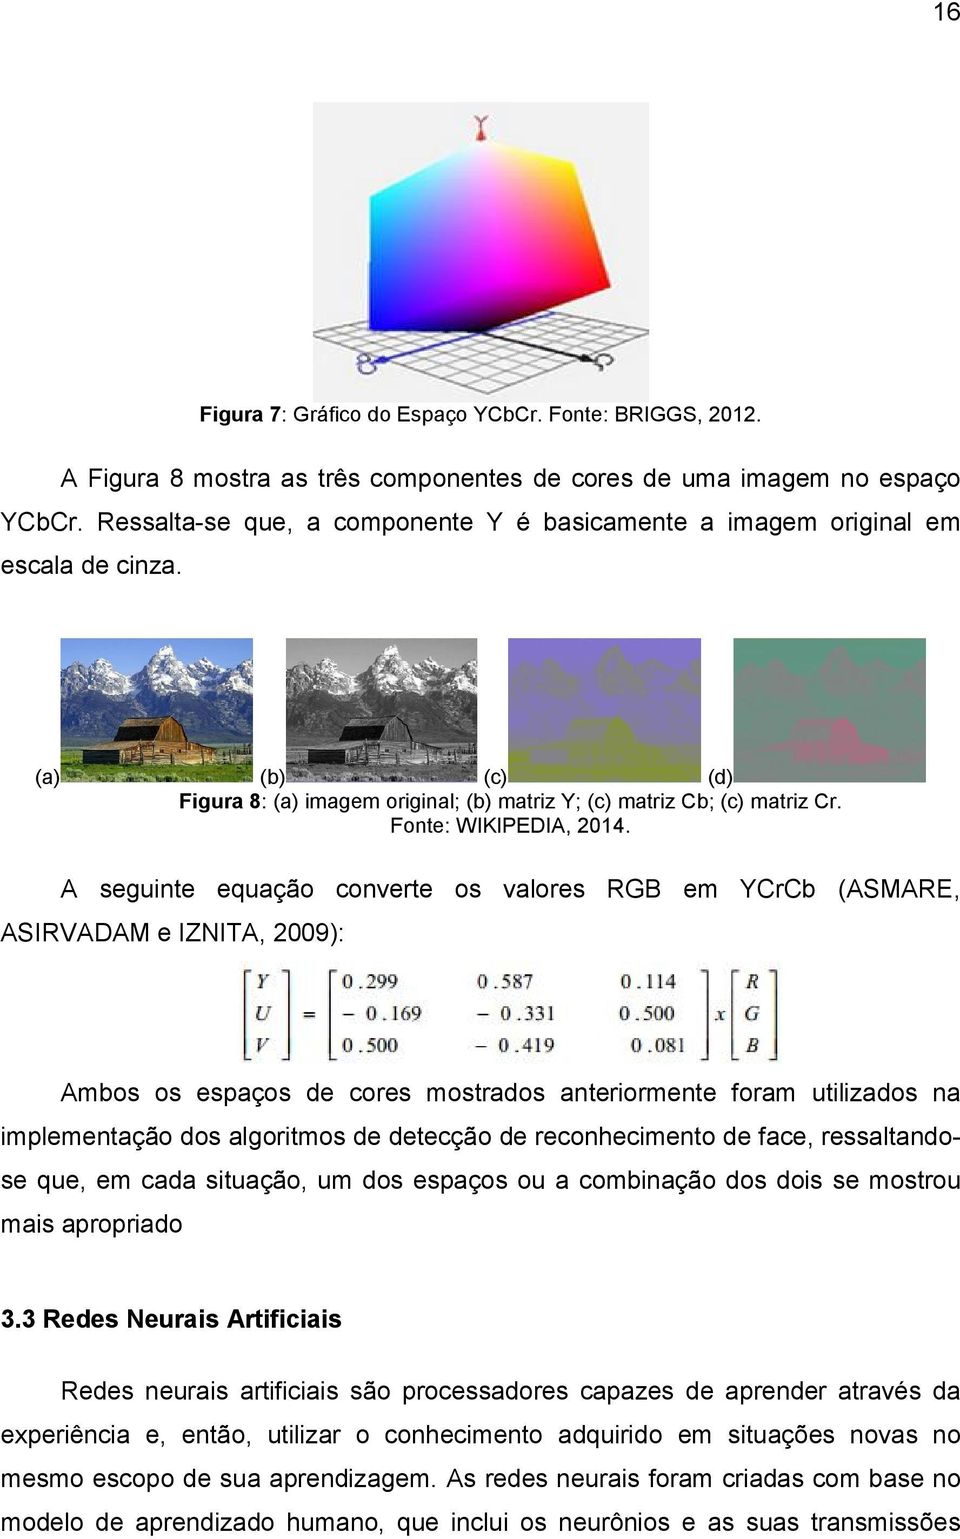 A seguinte equação converte os valores RGB em YCrCb (ASMARE, ASIRVADAM e IZNITA, 2009): Ambos os espaços de cores mostrados anteriormente foram utilizados na implementação dos algoritmos de detecção